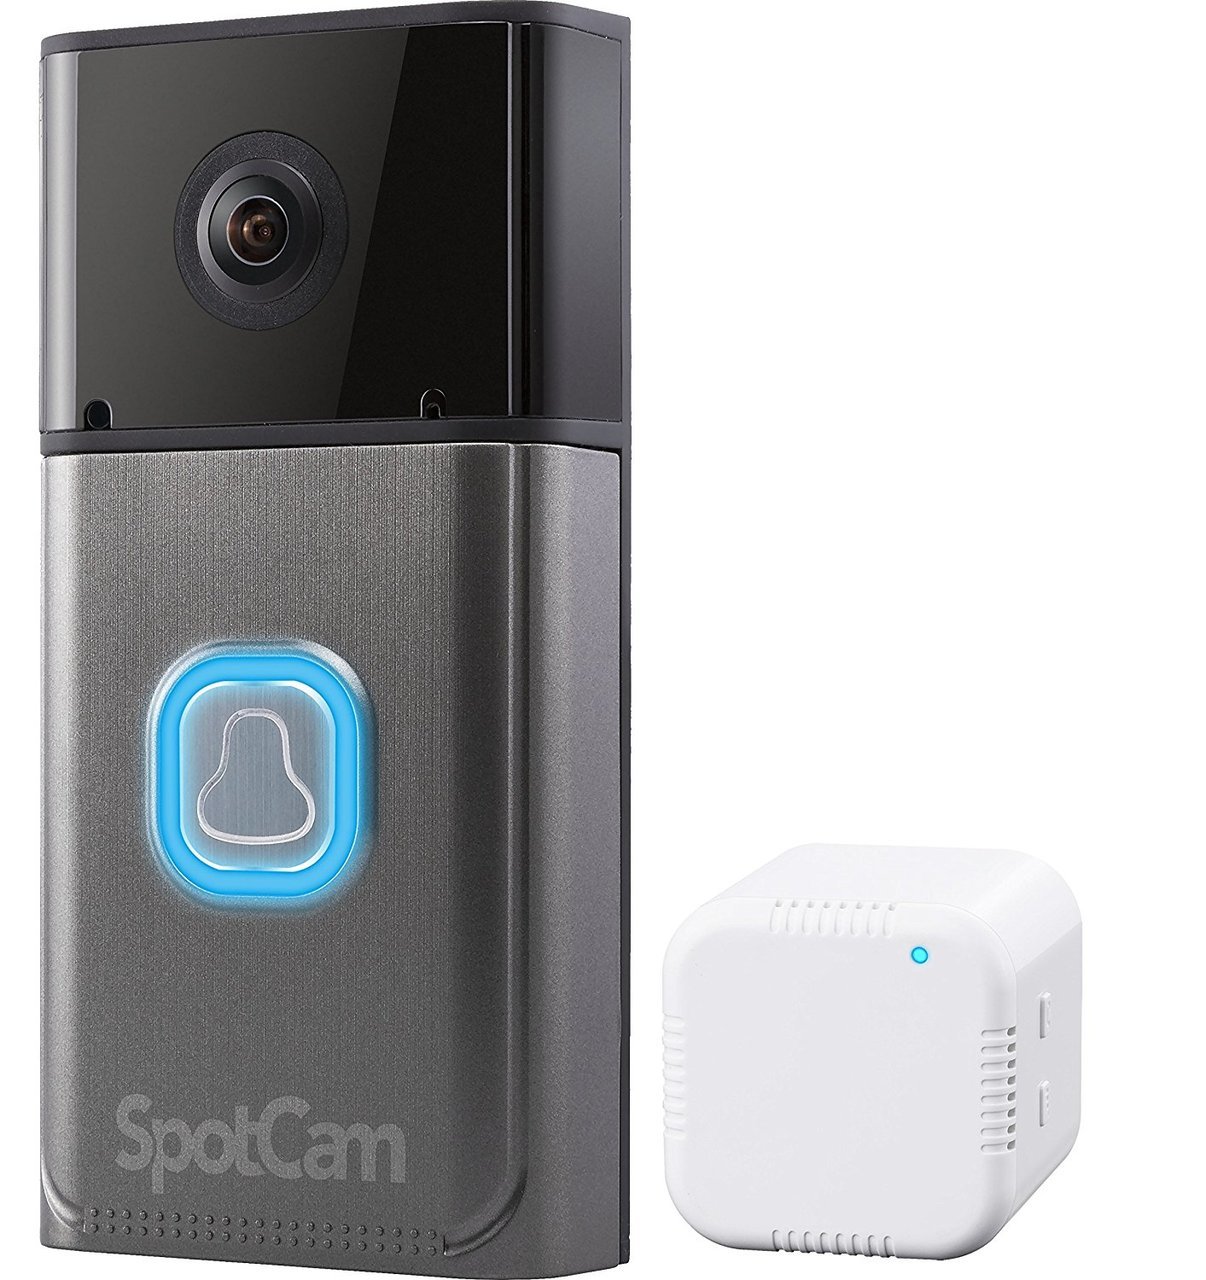 SpotCam Video Doorbell